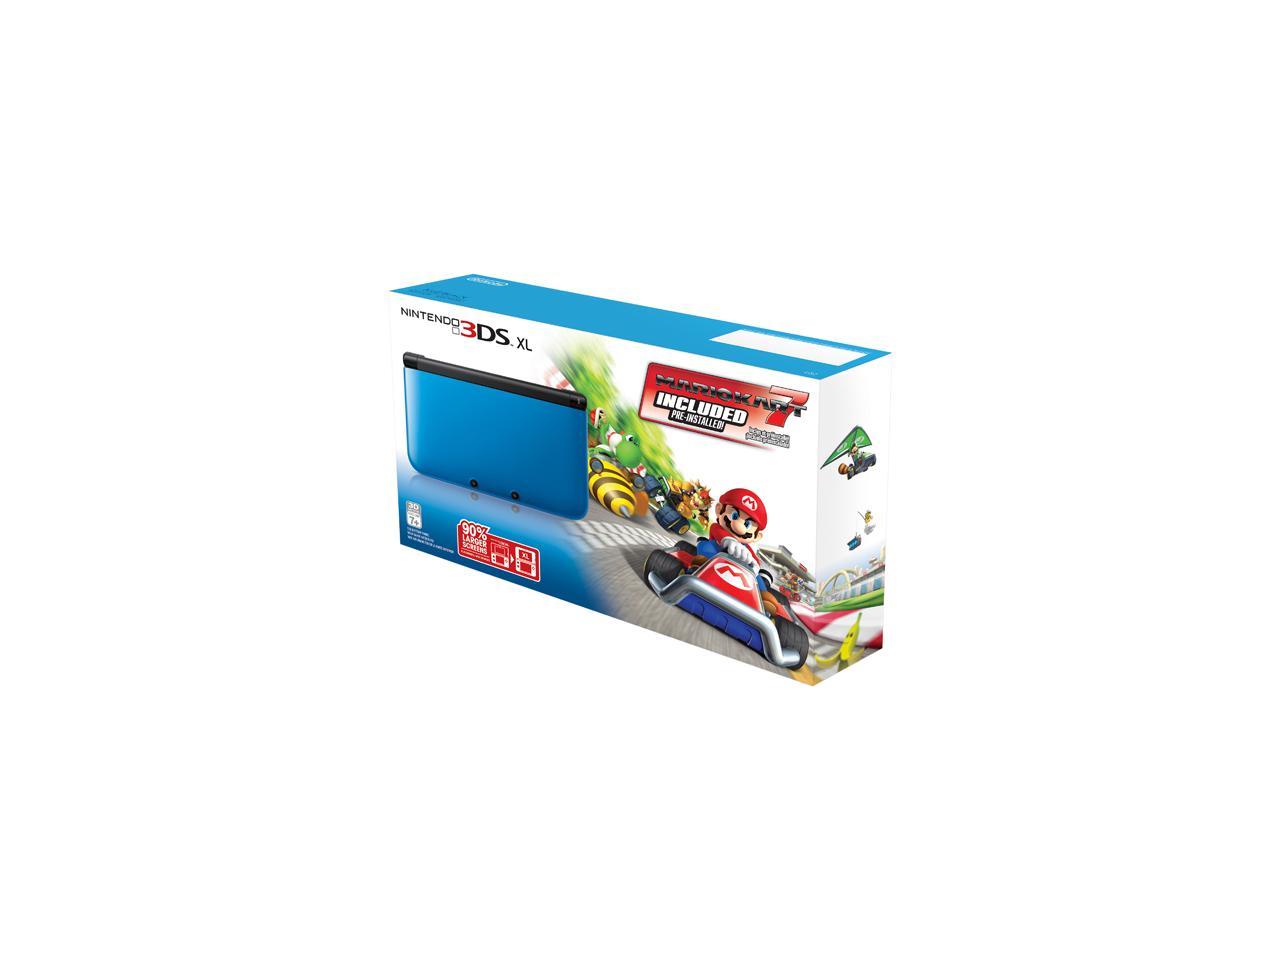 Nintendo 3ds Xl Blue Black System Bunde W Mario Kart 7 Newegg Com